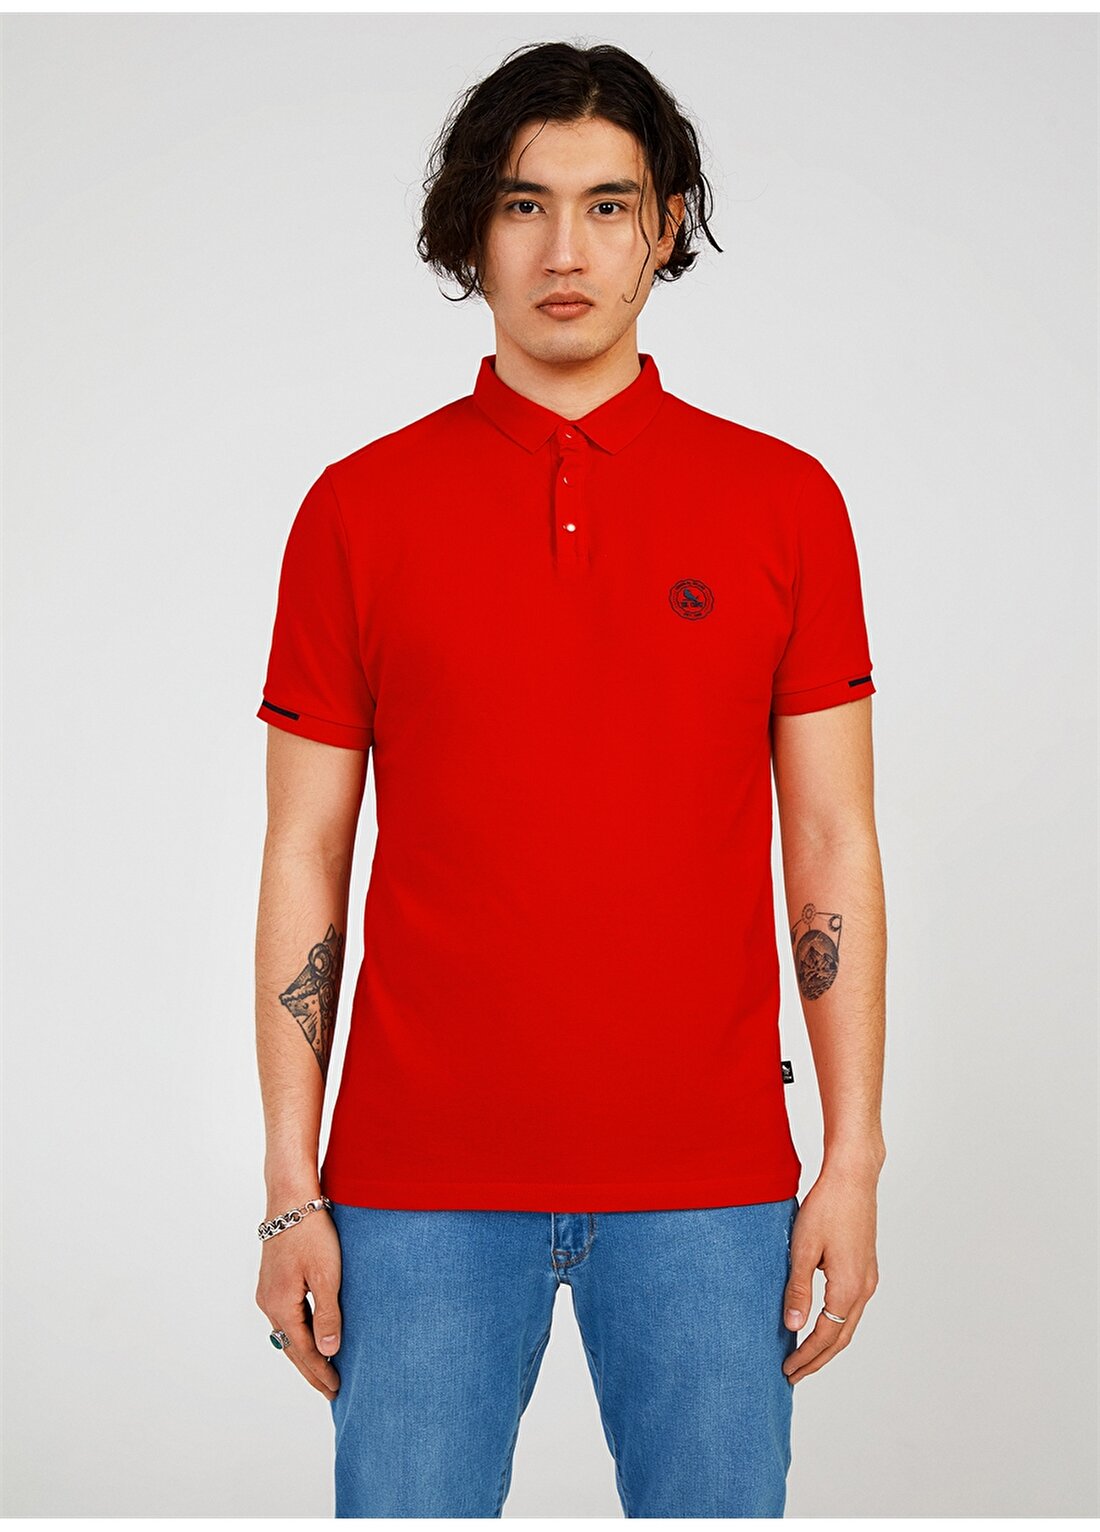 The Crow Çıtçıtlı Yaka Düz Kırmızı Erkek T-Shirt TC4615